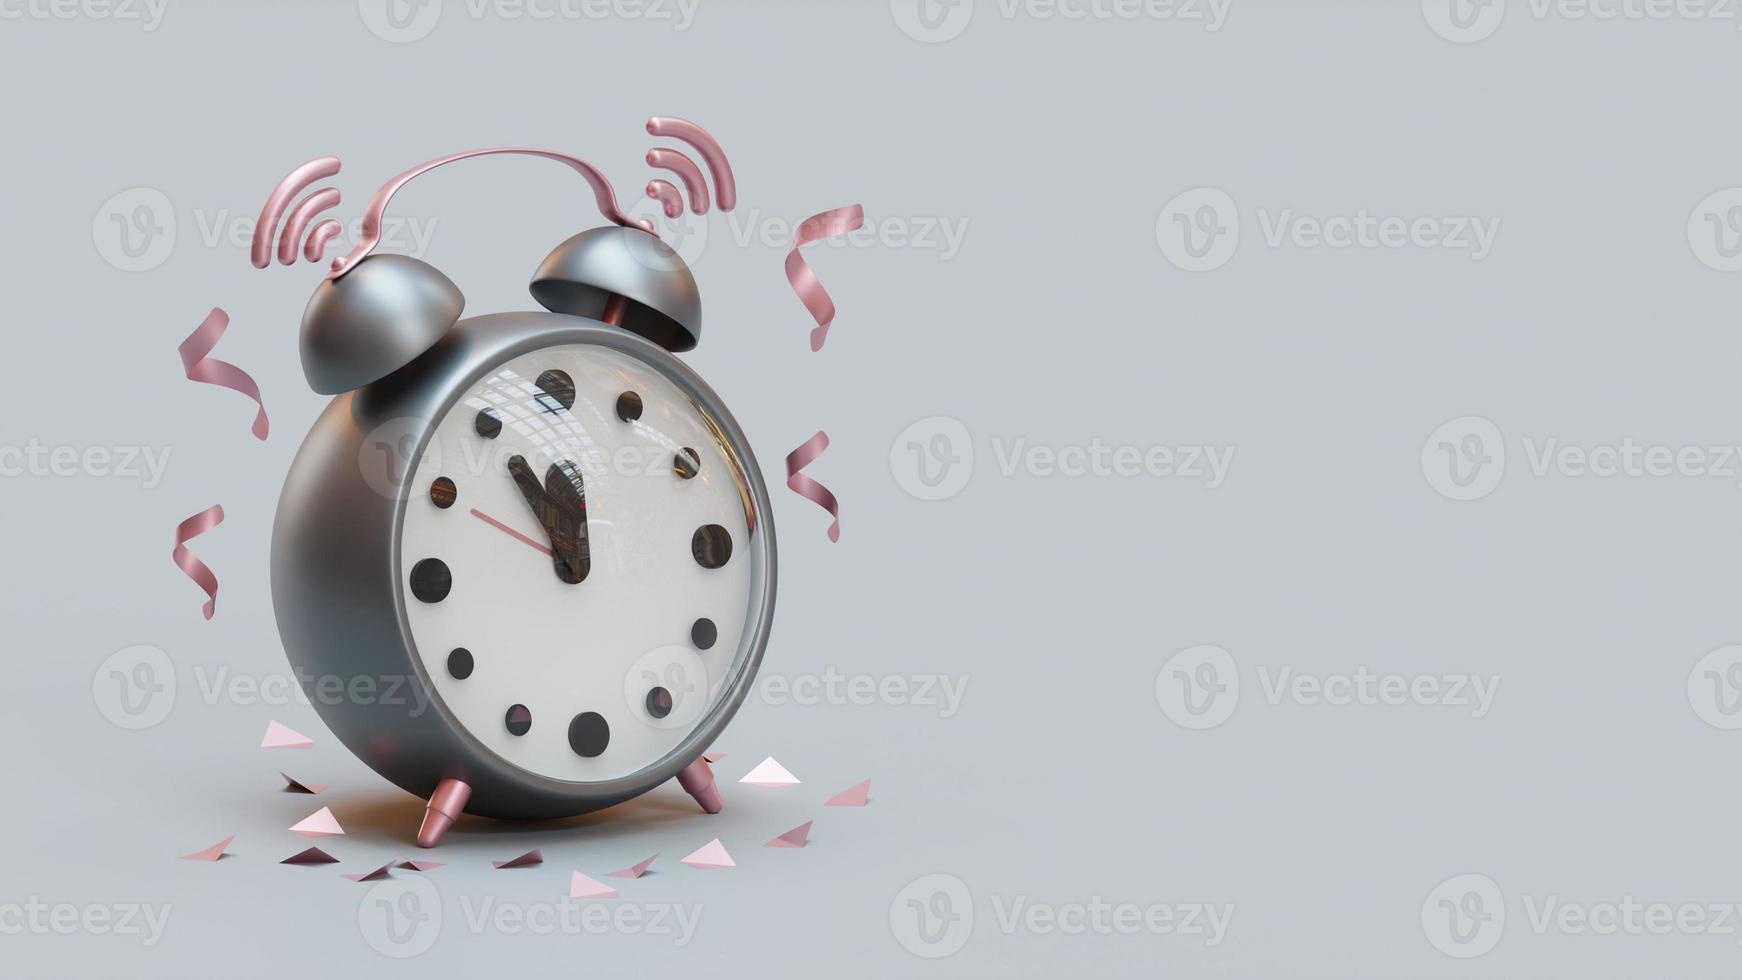 Página de inicio de año nuevo con reloj despertador analógico Ilustración de renderizado 3D foto